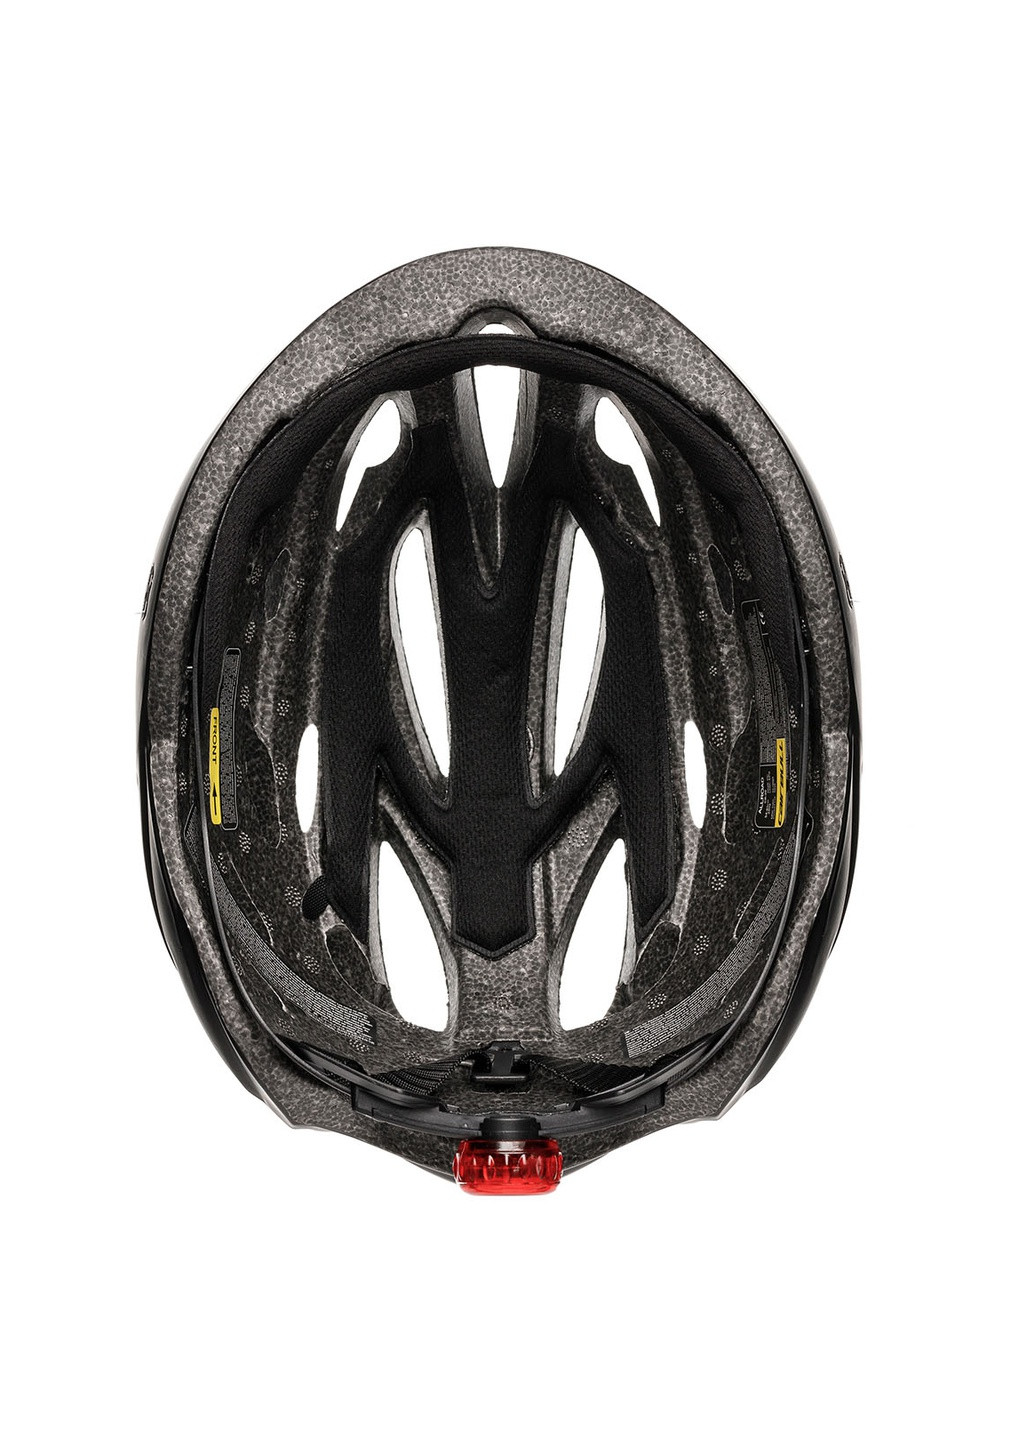 Велосипедний шолом із візором і габаритним LED ліхтарем, захисний велошлем чоловічий, велошлем жіночий Cairbull (252818602)